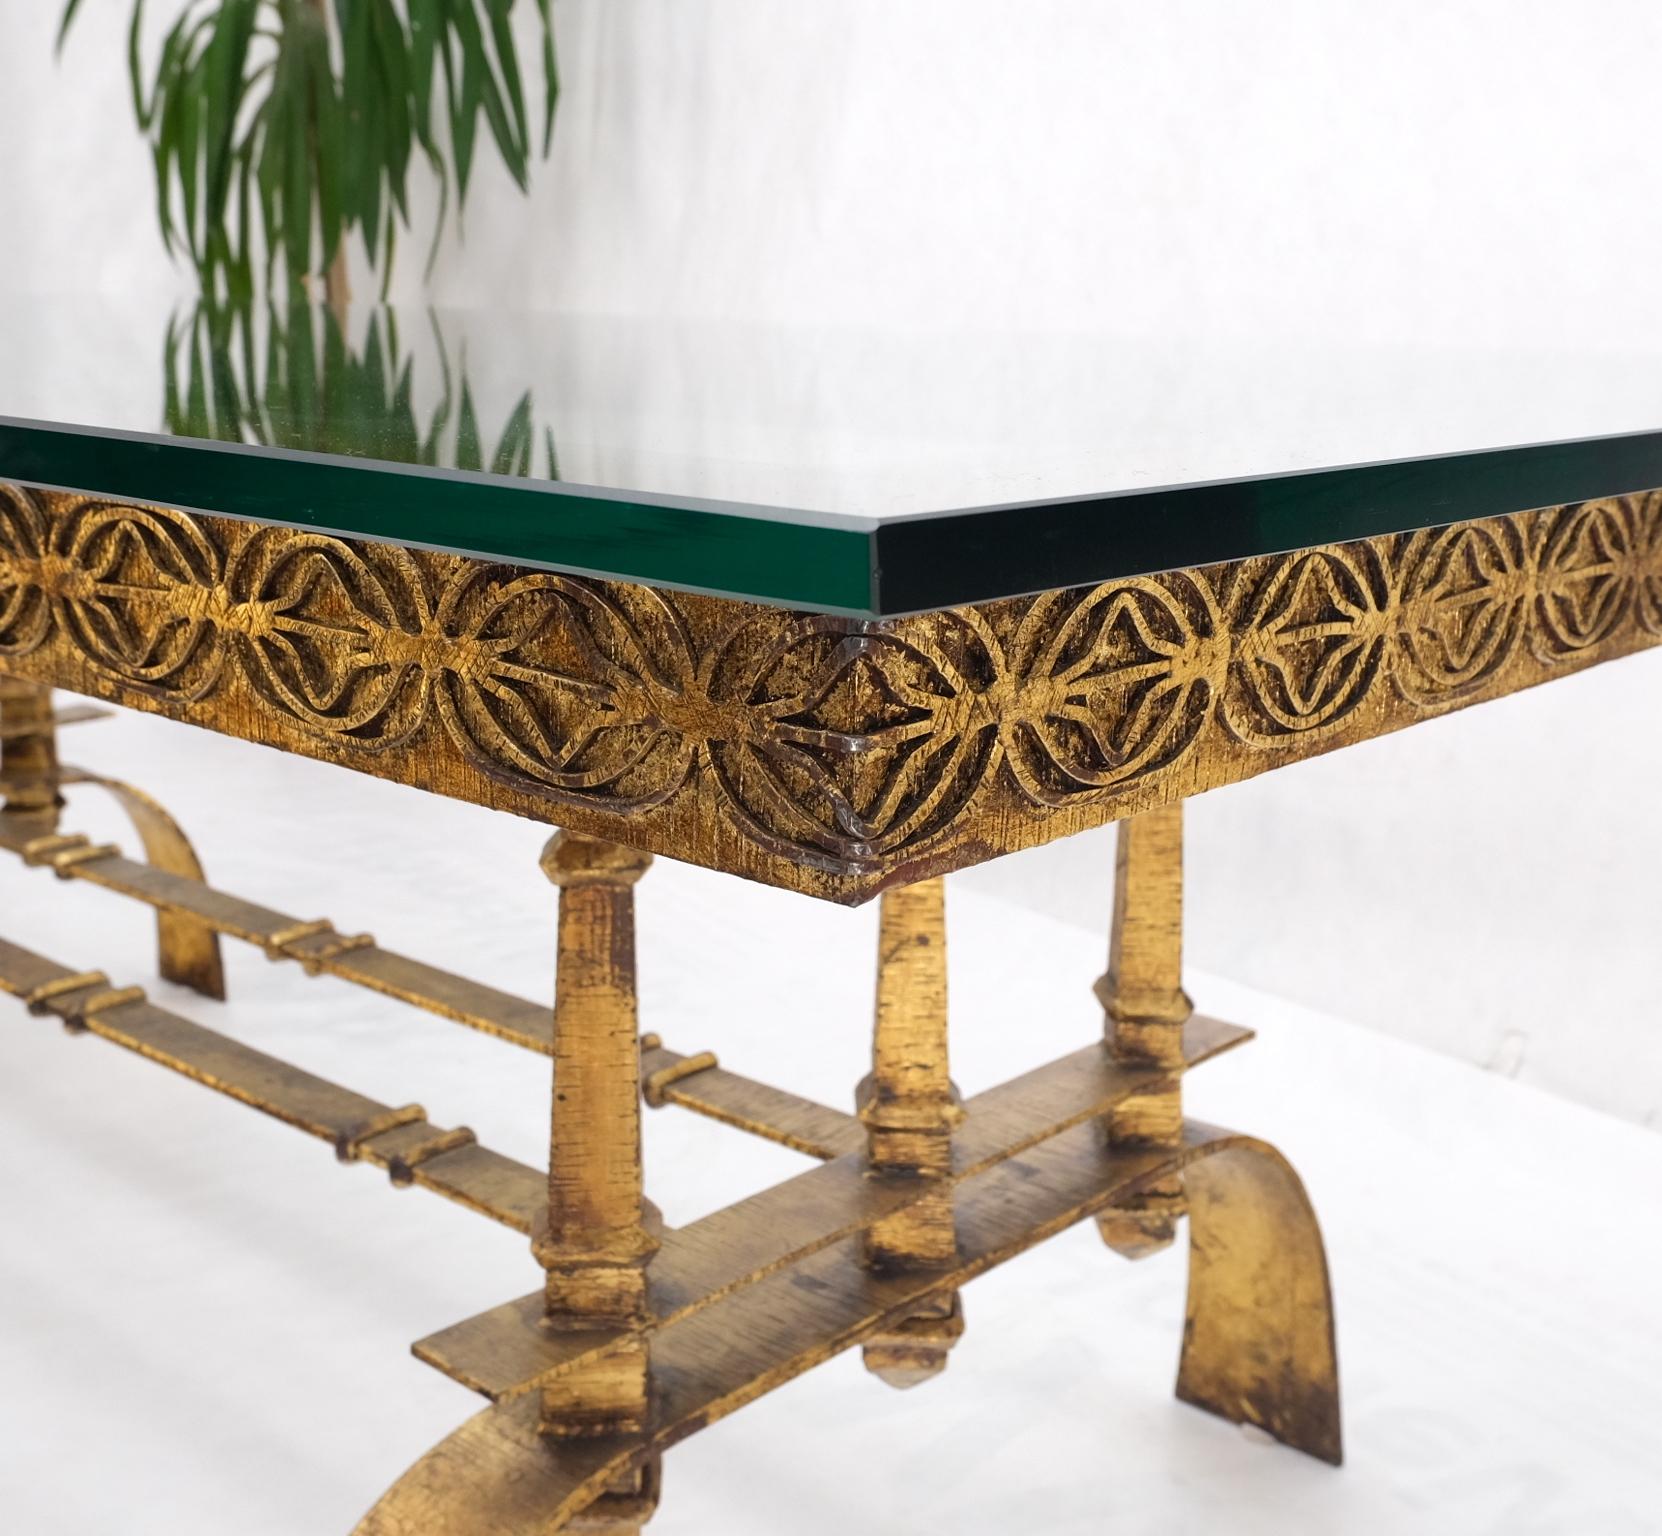 Lourde base en métal doré grande table à manger rectangulaire Hollywood Regency menthe !
Paul Evans match décor.
Le verre mesure 3/4'' d'épaisseur.